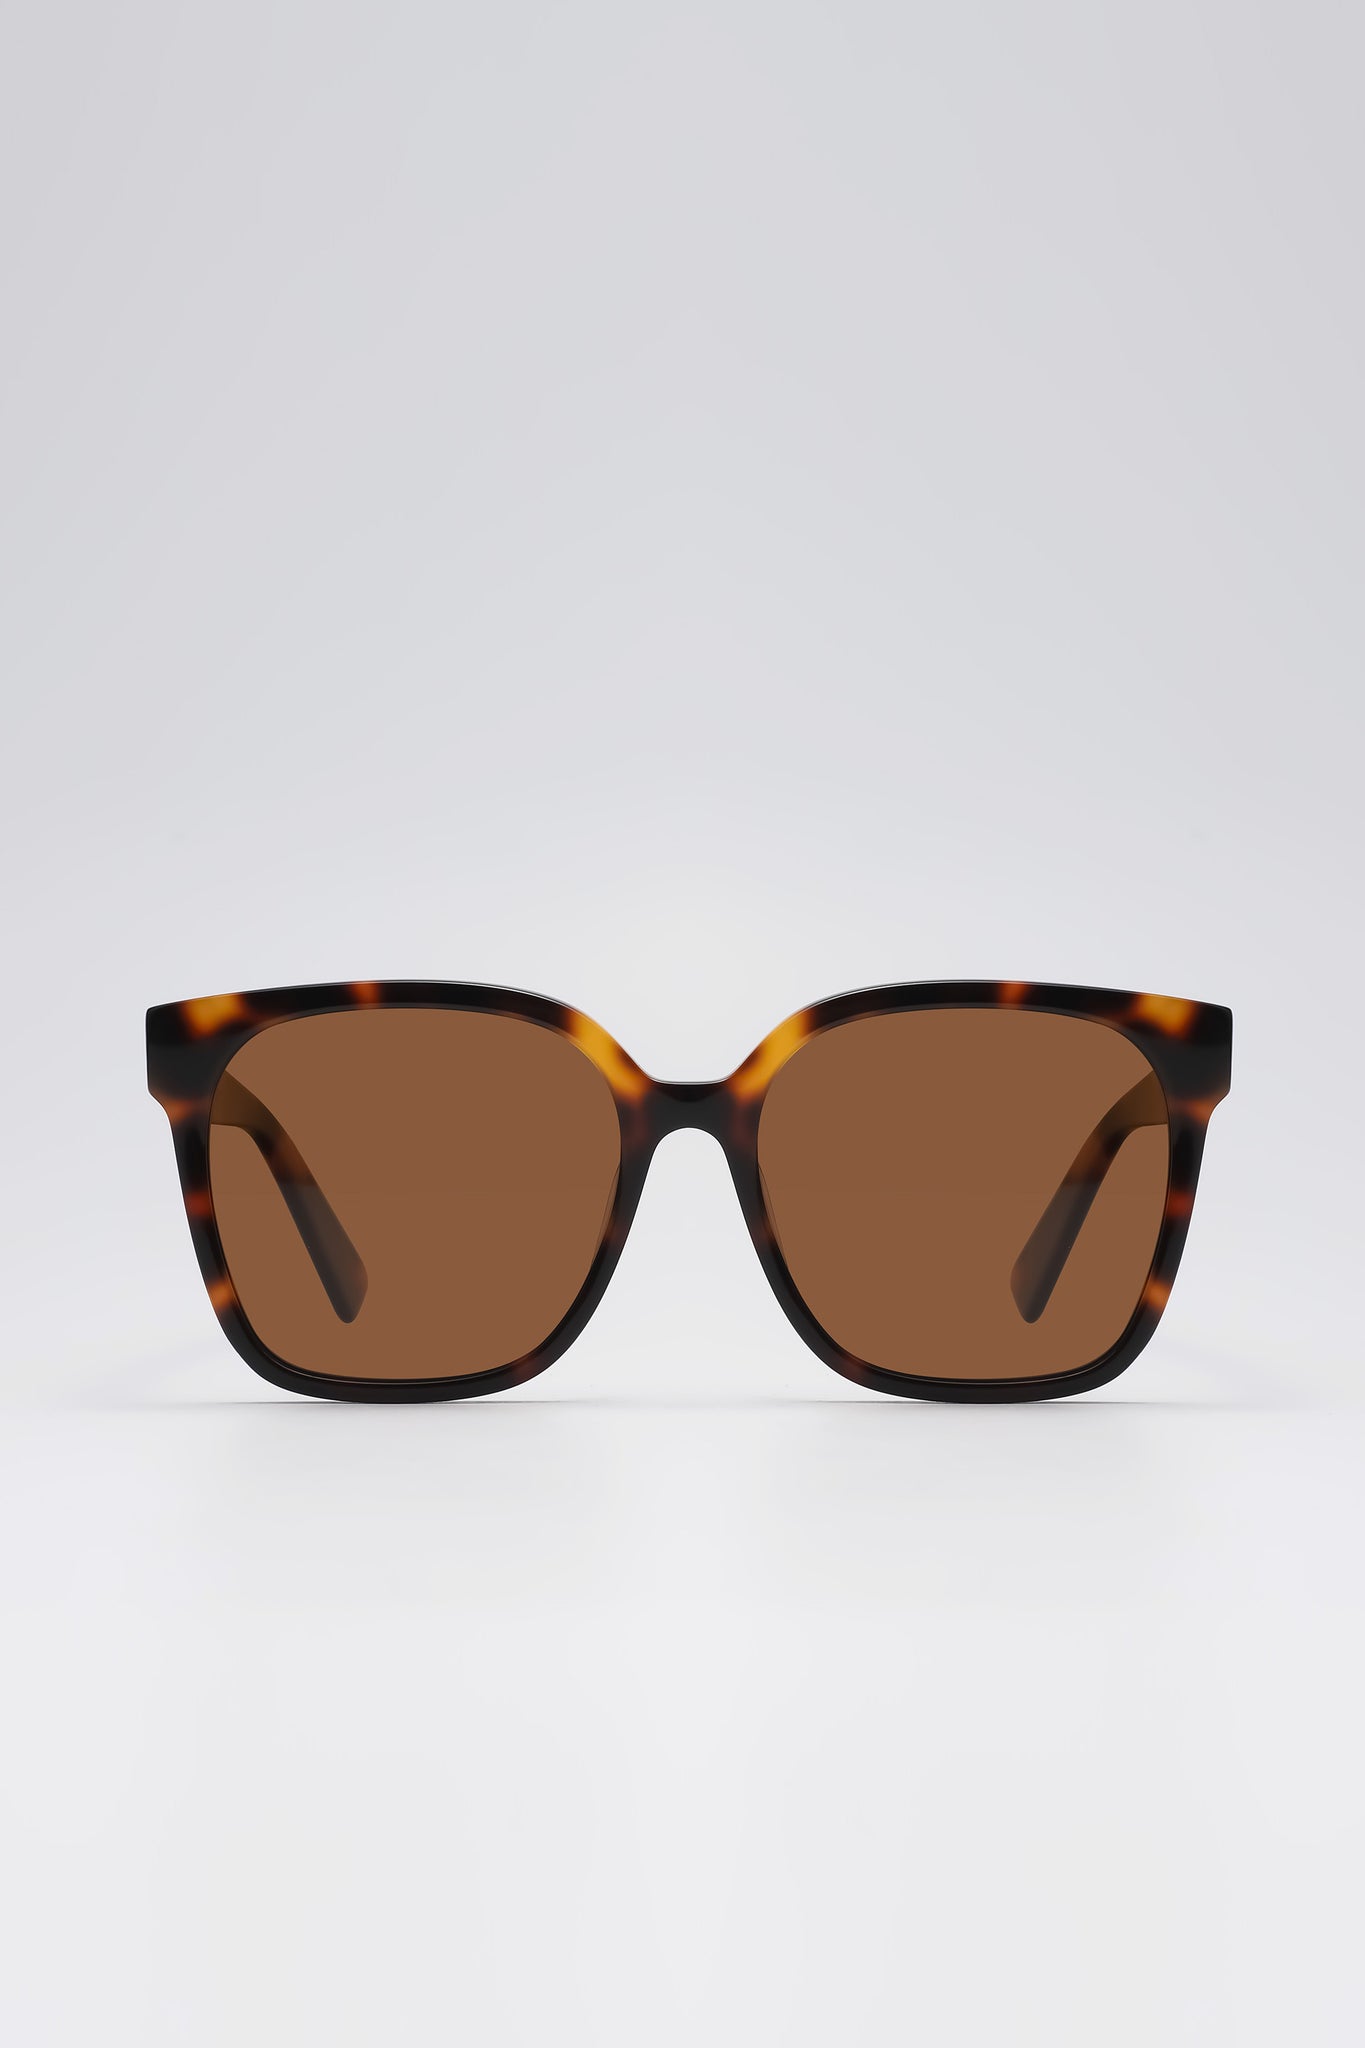 Fangyan | Rectangular Tortoiseshell Brown Sunglasses